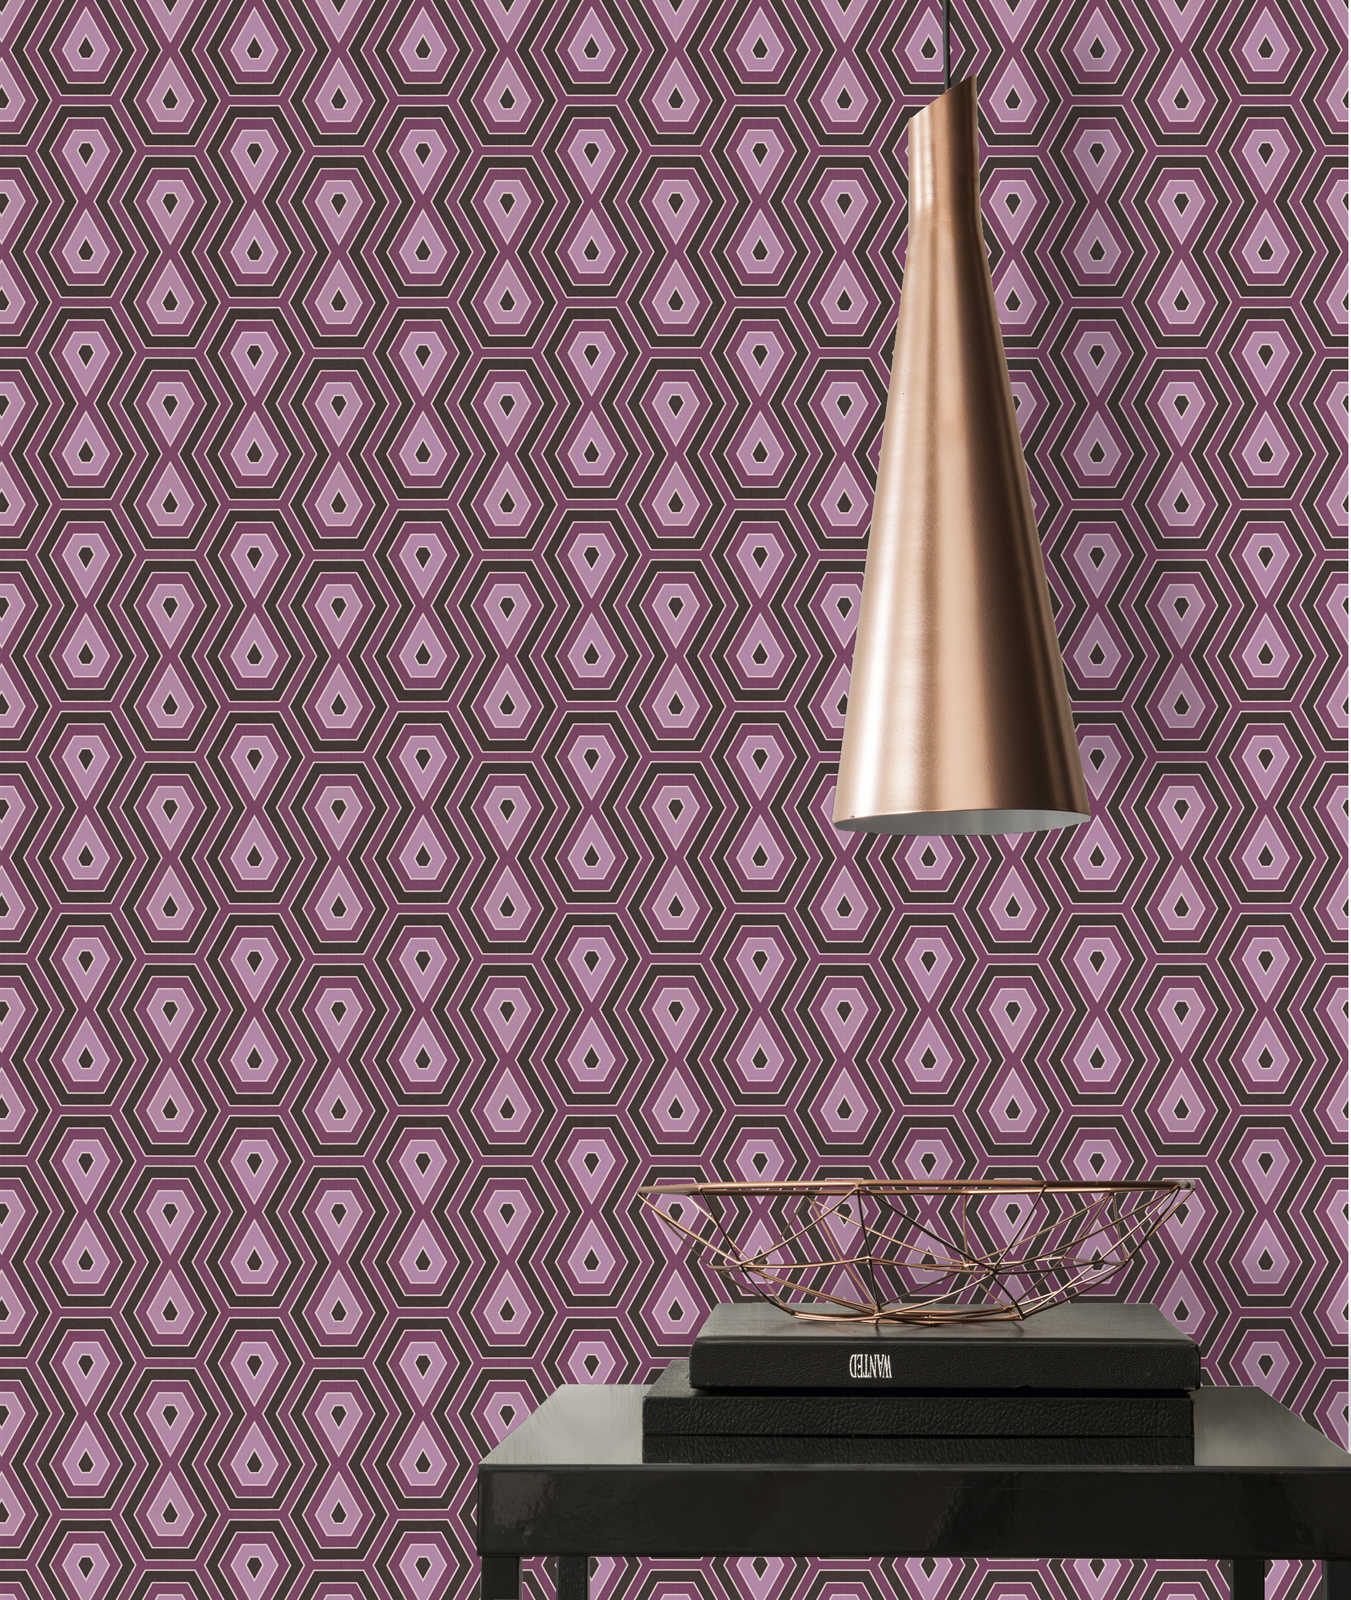             Patroonbehang paars & oudroze met grafisch retro design - paars, zwart
        